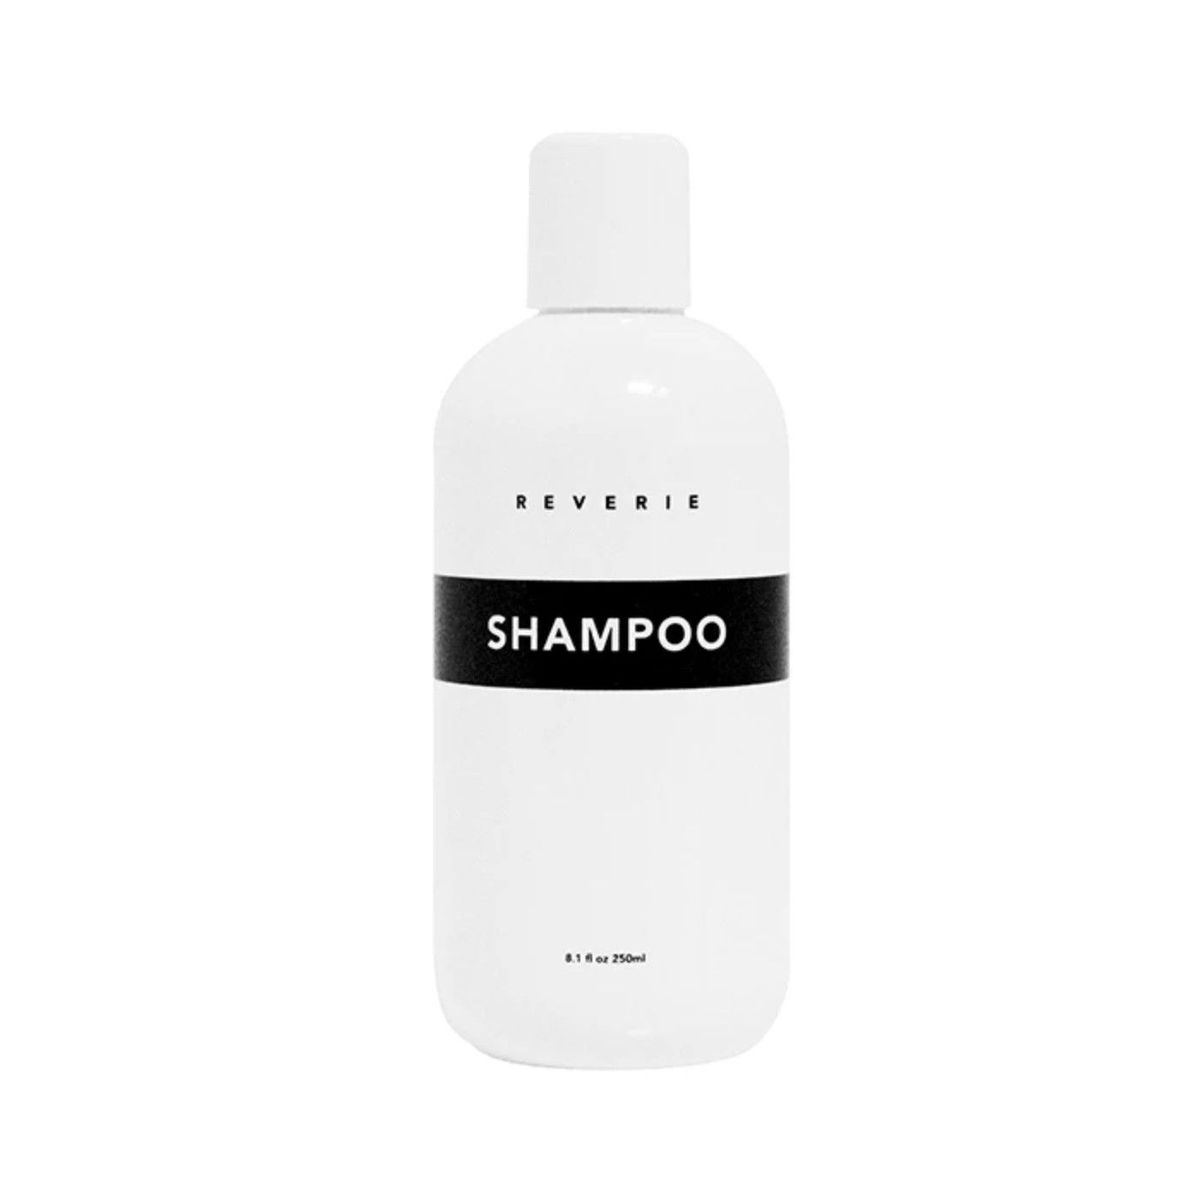 Weiße Flasche Shampoo mit einem schwarzen Etikett auf einem weißen Hintergrund.